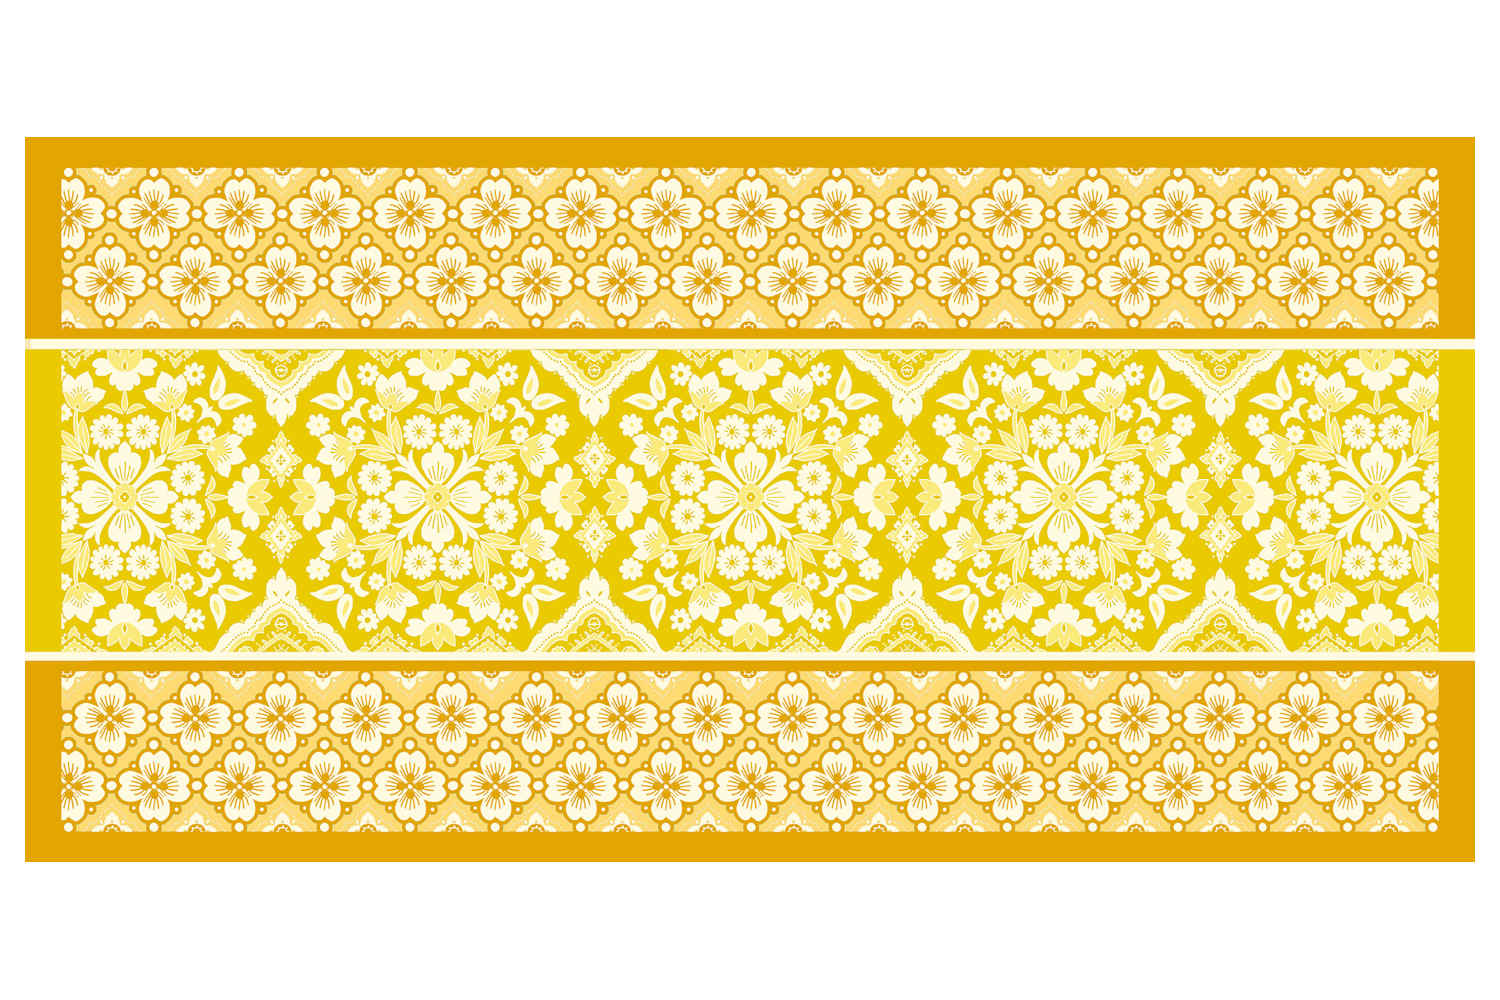 Bassetti Strandtuch Posillipo gelb aus 100% Baumwolle, 90x180 cm 